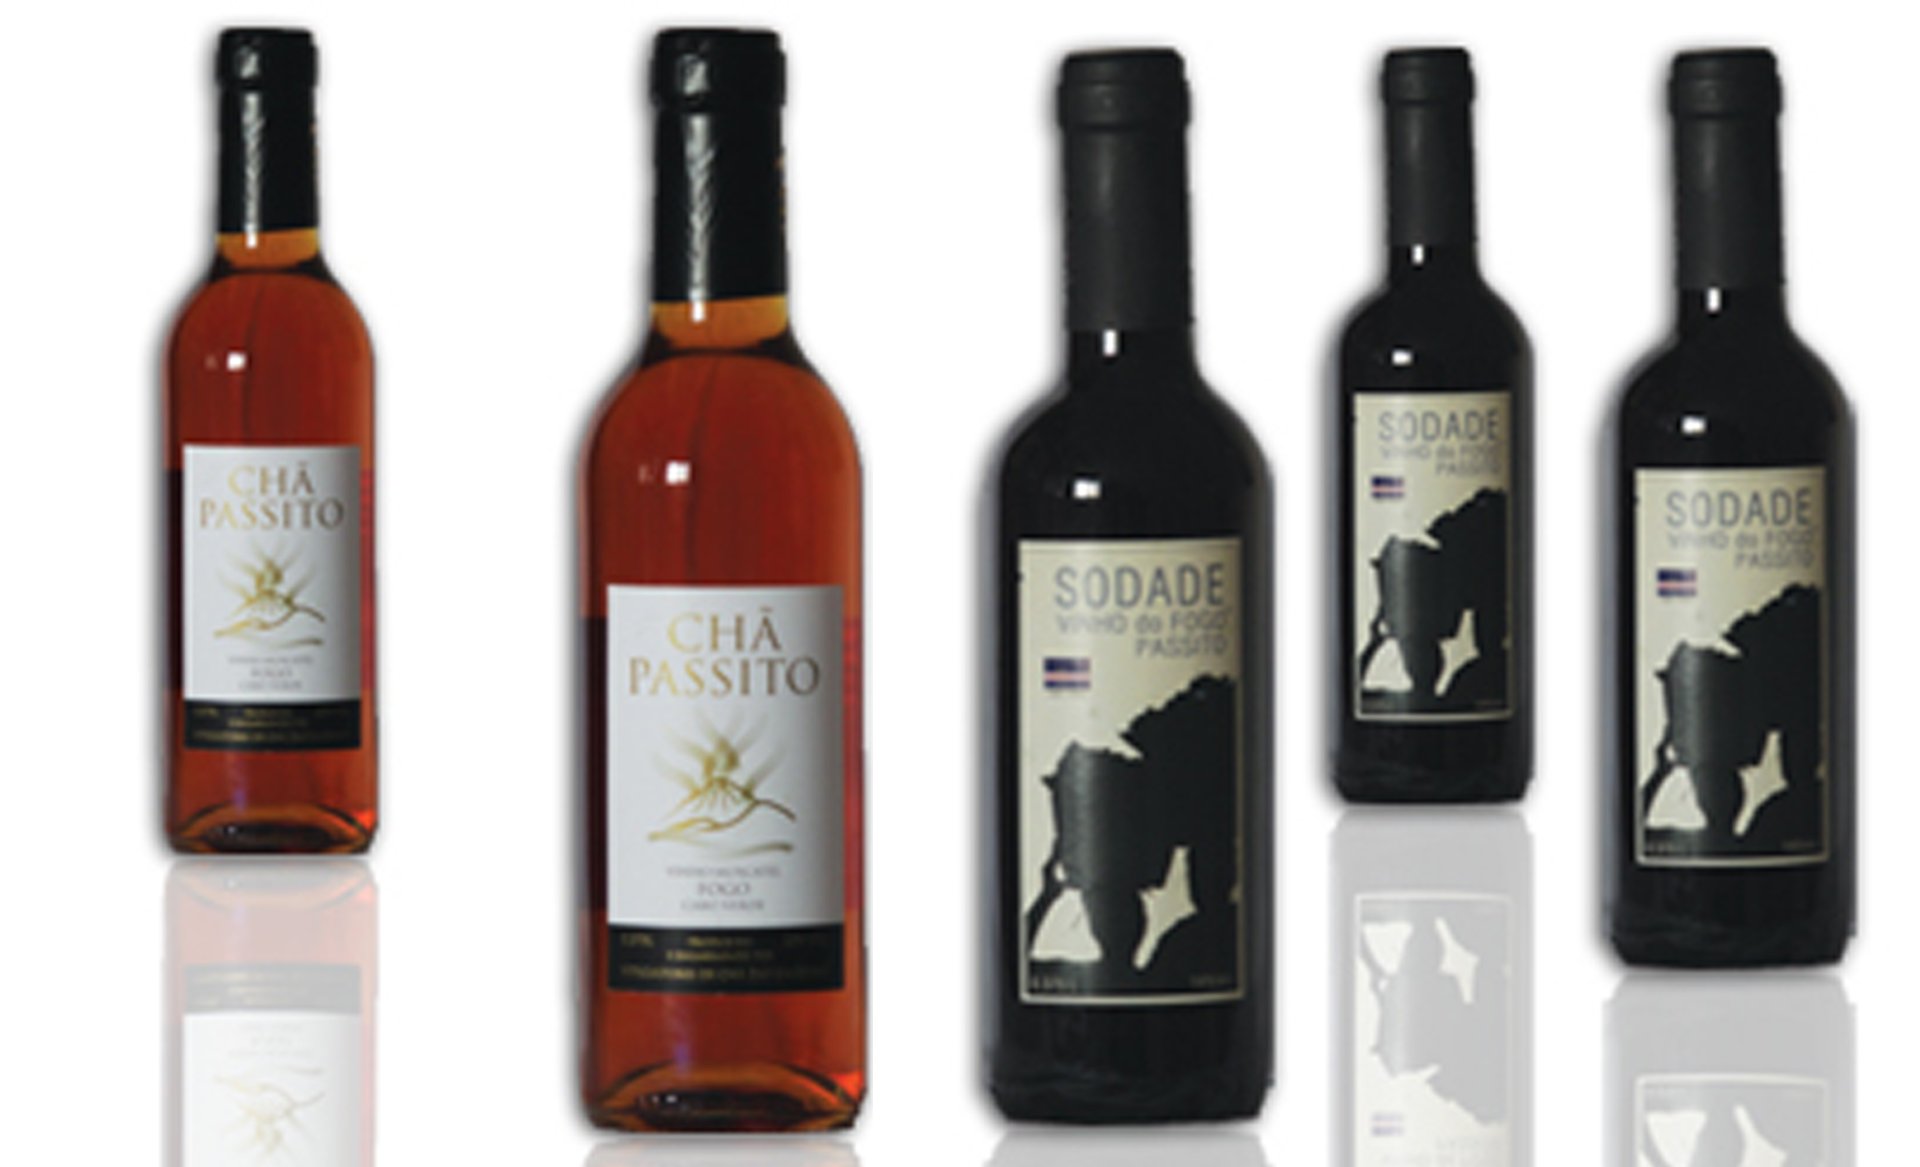 Obr 8 Produkce vína „passito“ ze soukromého vinařství Eduína Lopese "Sodade" a produkce družstevního vinařství „Chã das Caldeiras“